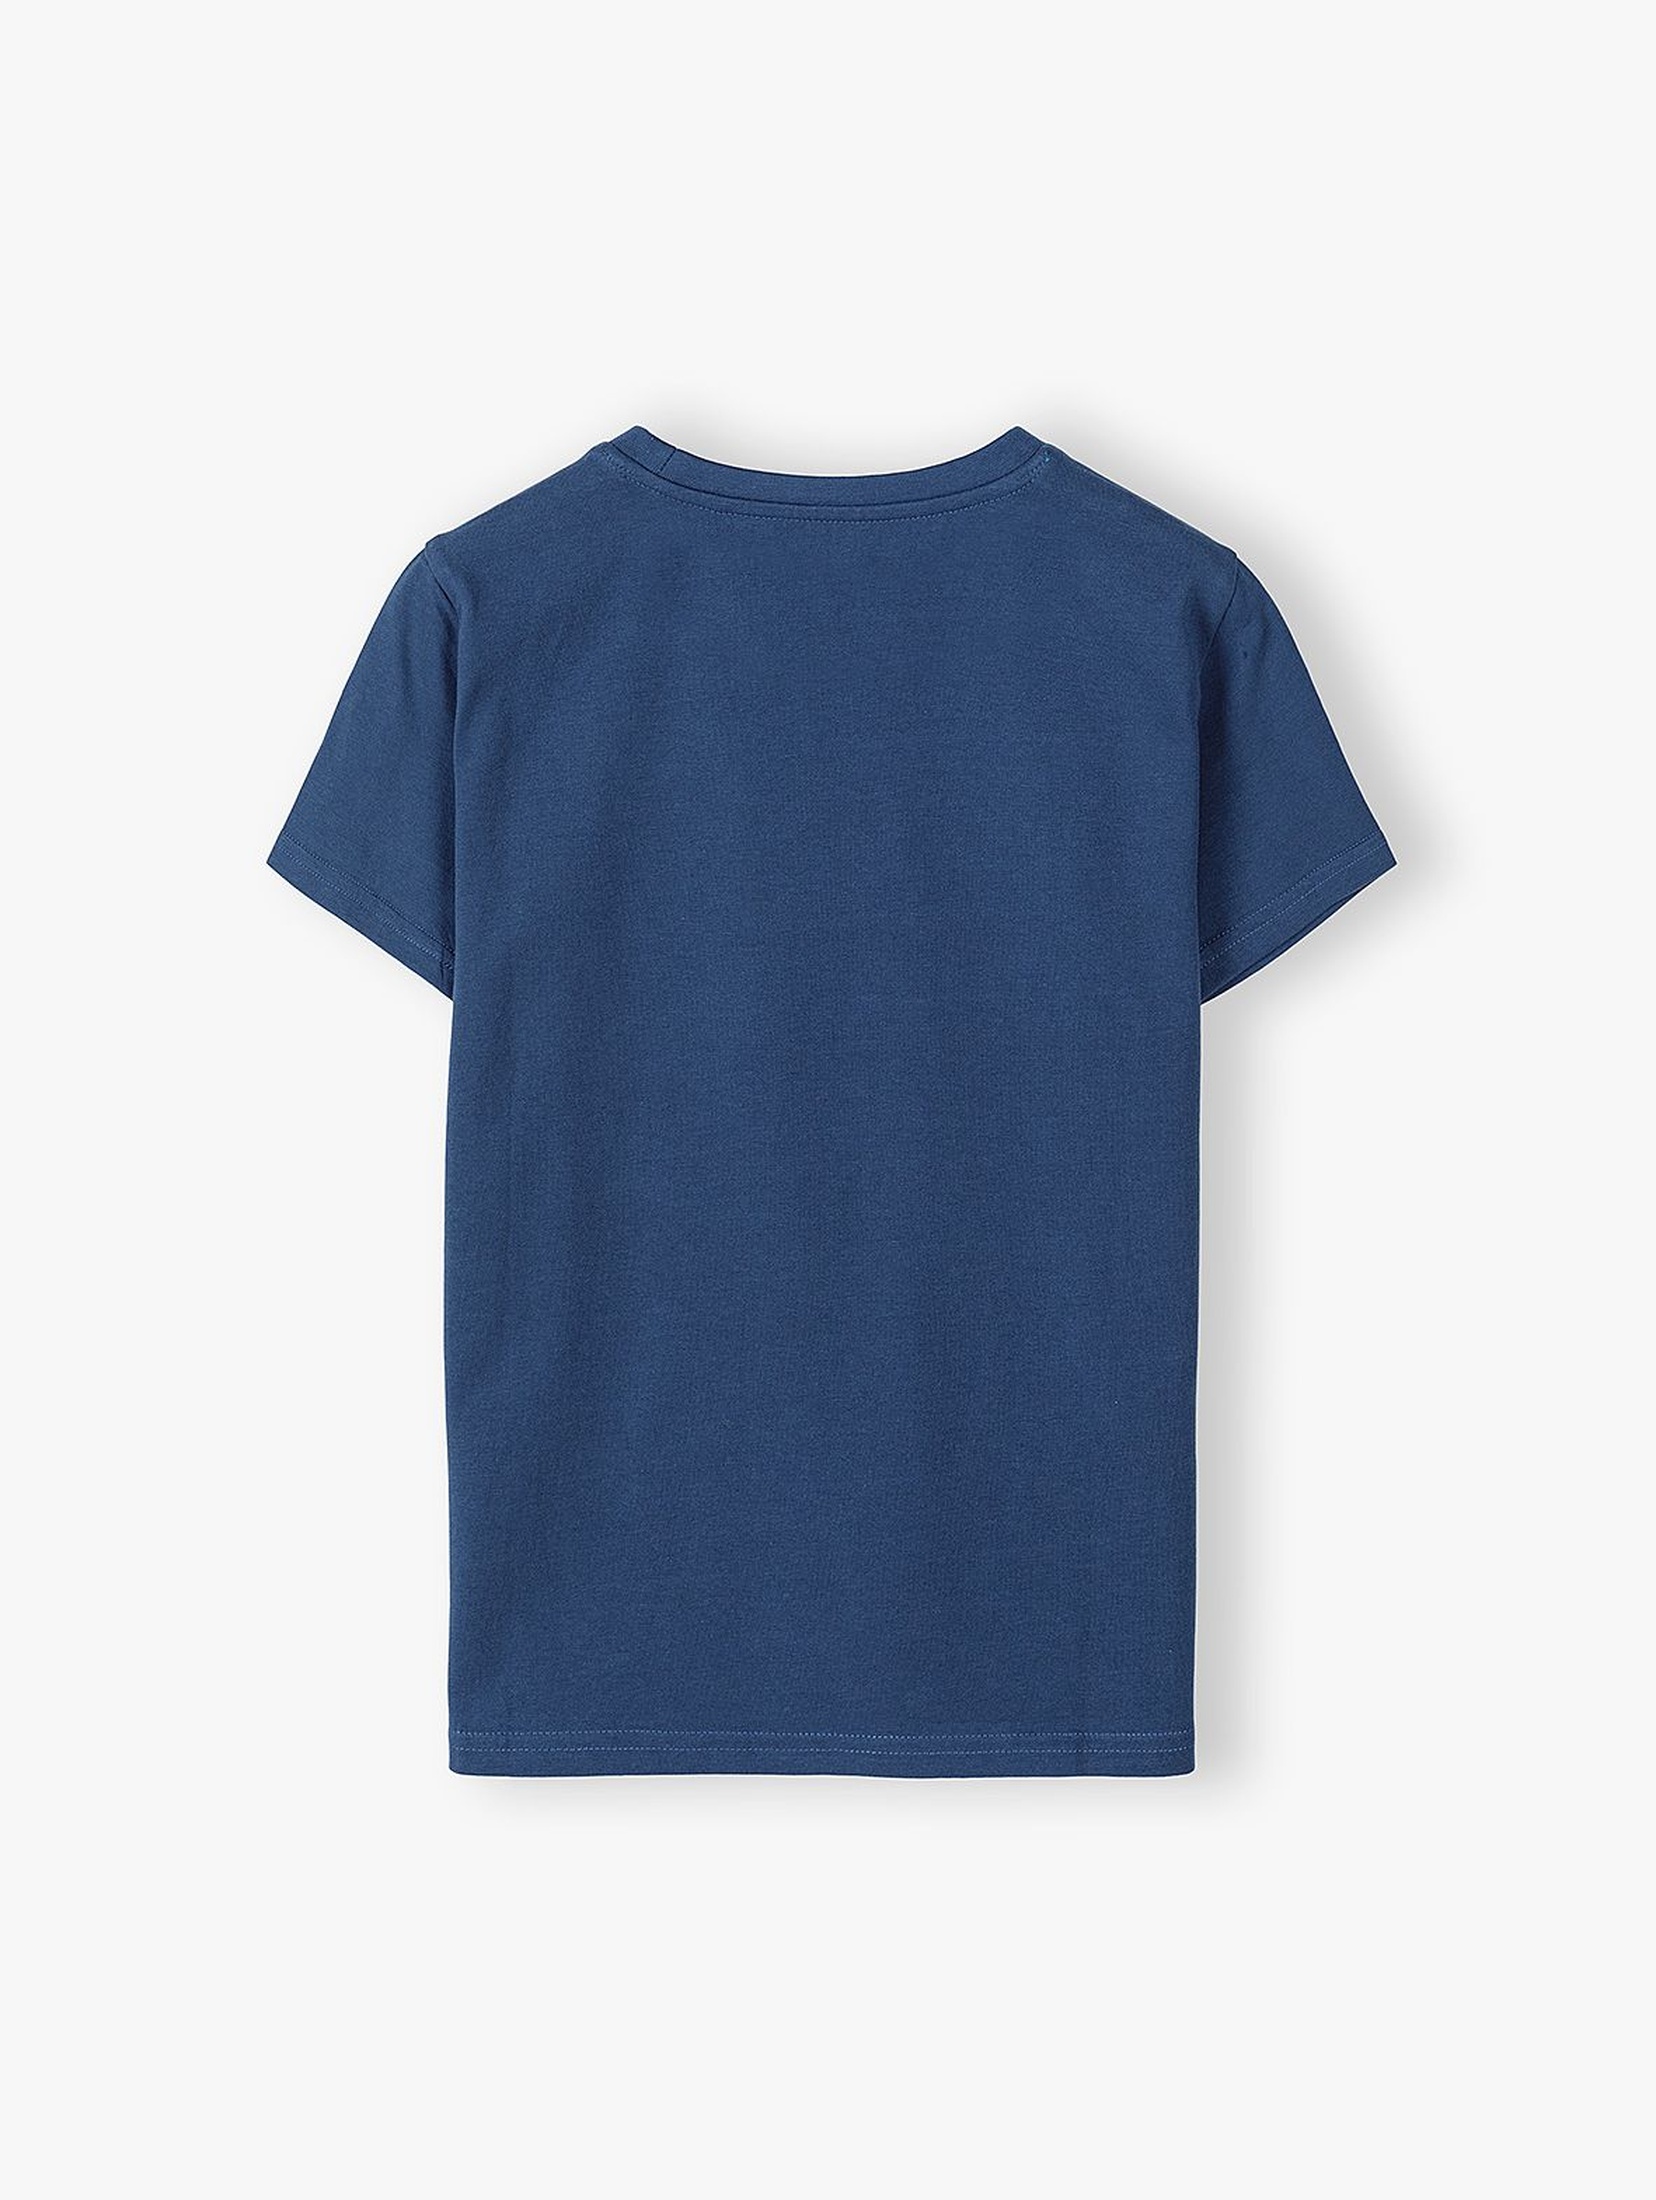 Granatowy t-shirt dla chłopca- SMART ONE